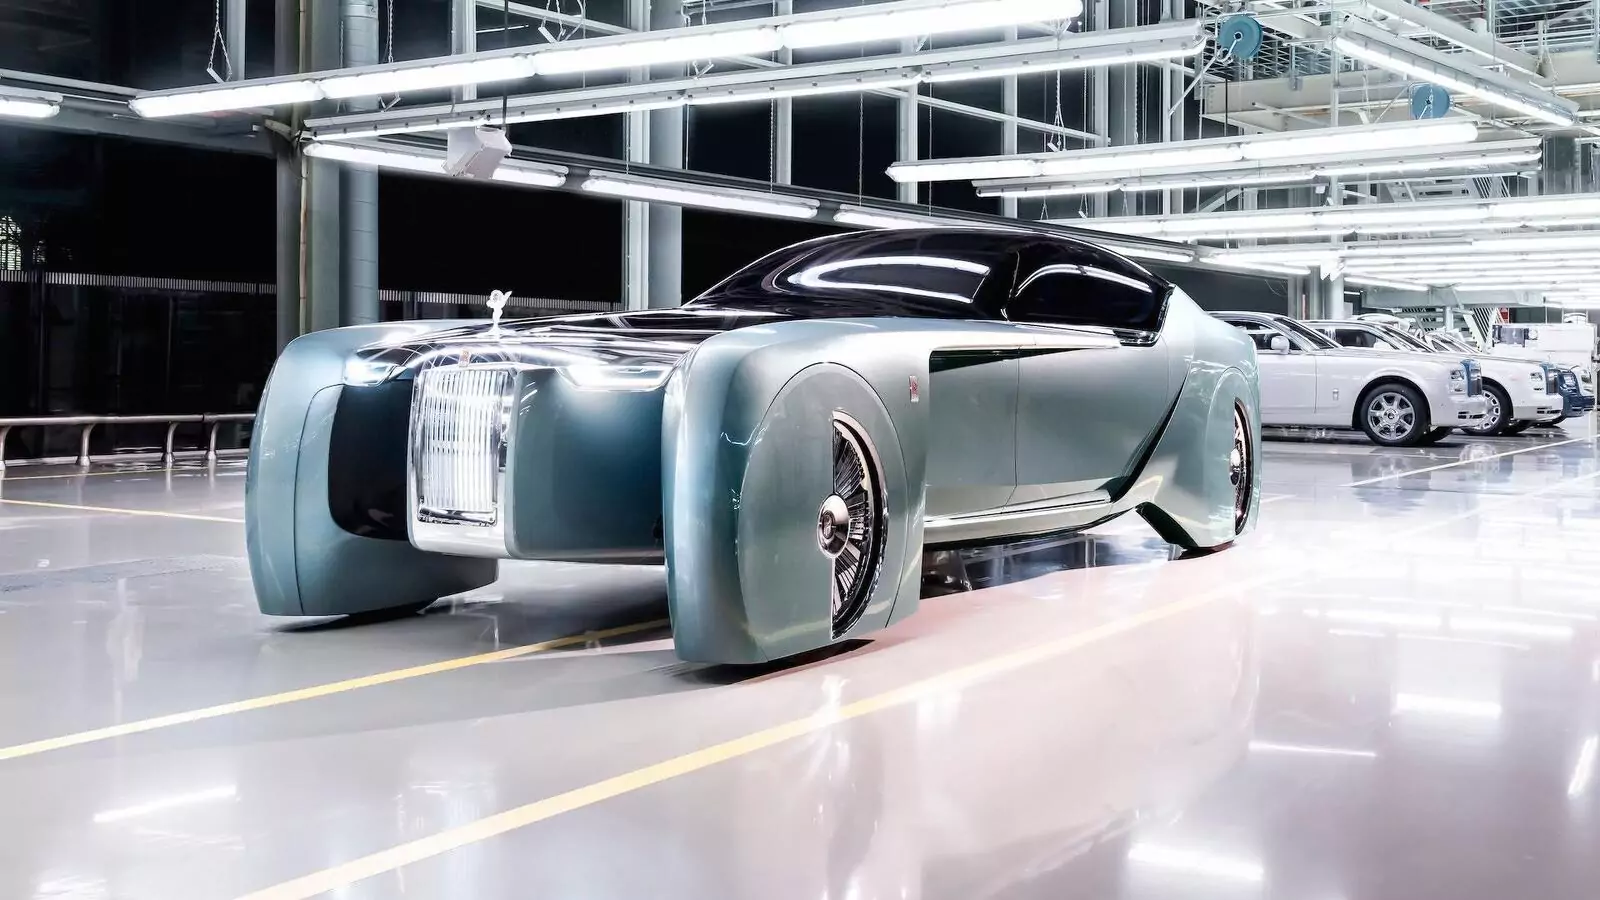 Rolls-Royce Silent Shadow планируется как электромобиль сверхвысокого класса?